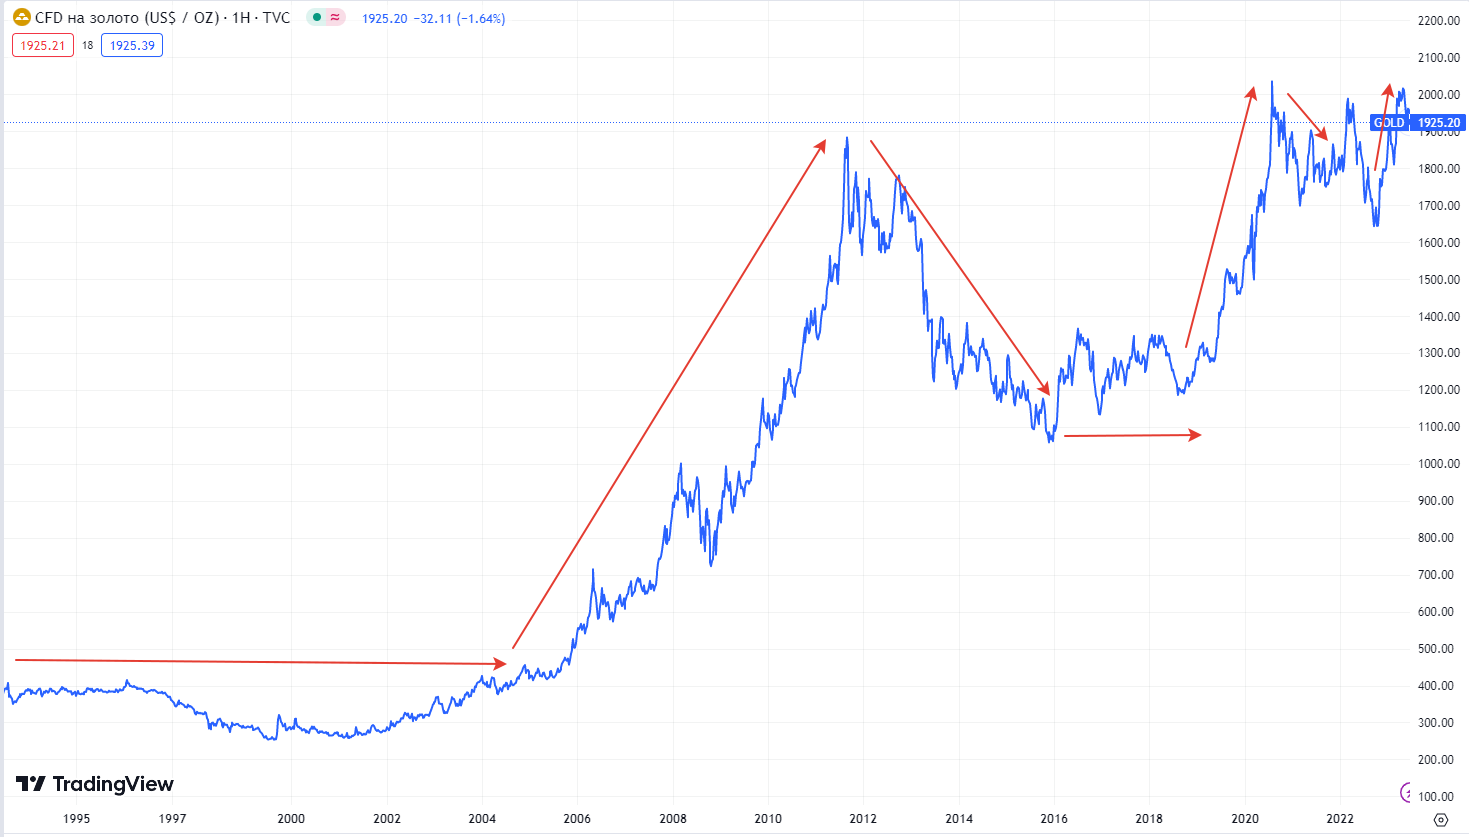 Динамика цен на золото